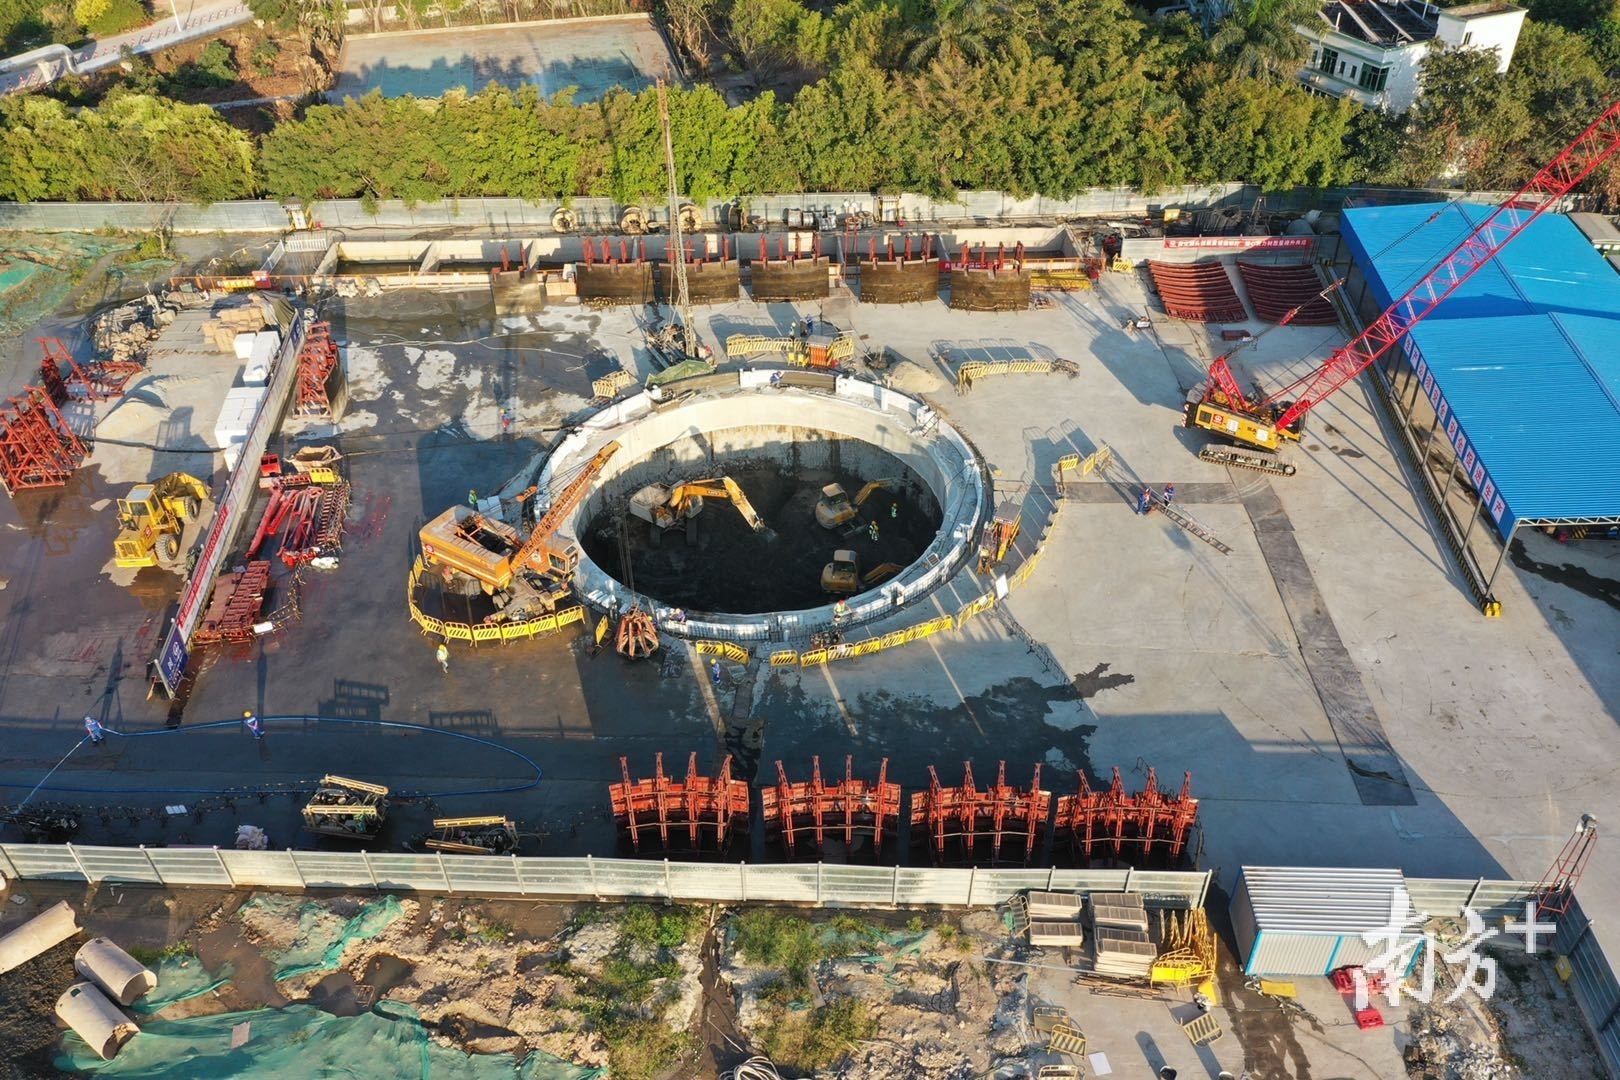 2019年11月28日珠三角水资源配置工程B3标+GS05#号工作井浇筑中。